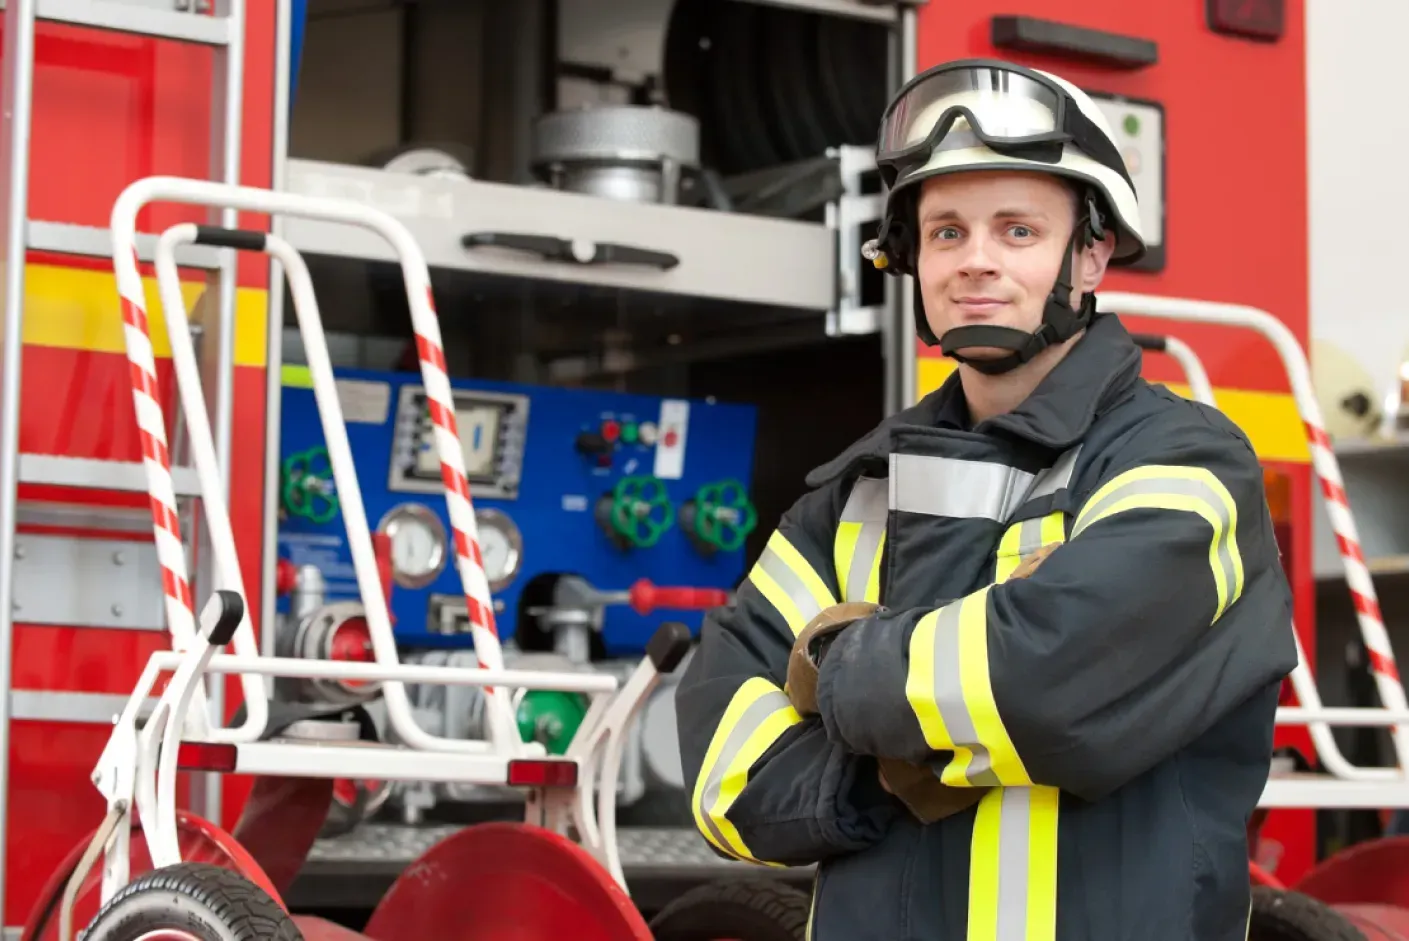 Practicar con el simulador test bomberos AENA para mejorar tus habilidades y conocimientos